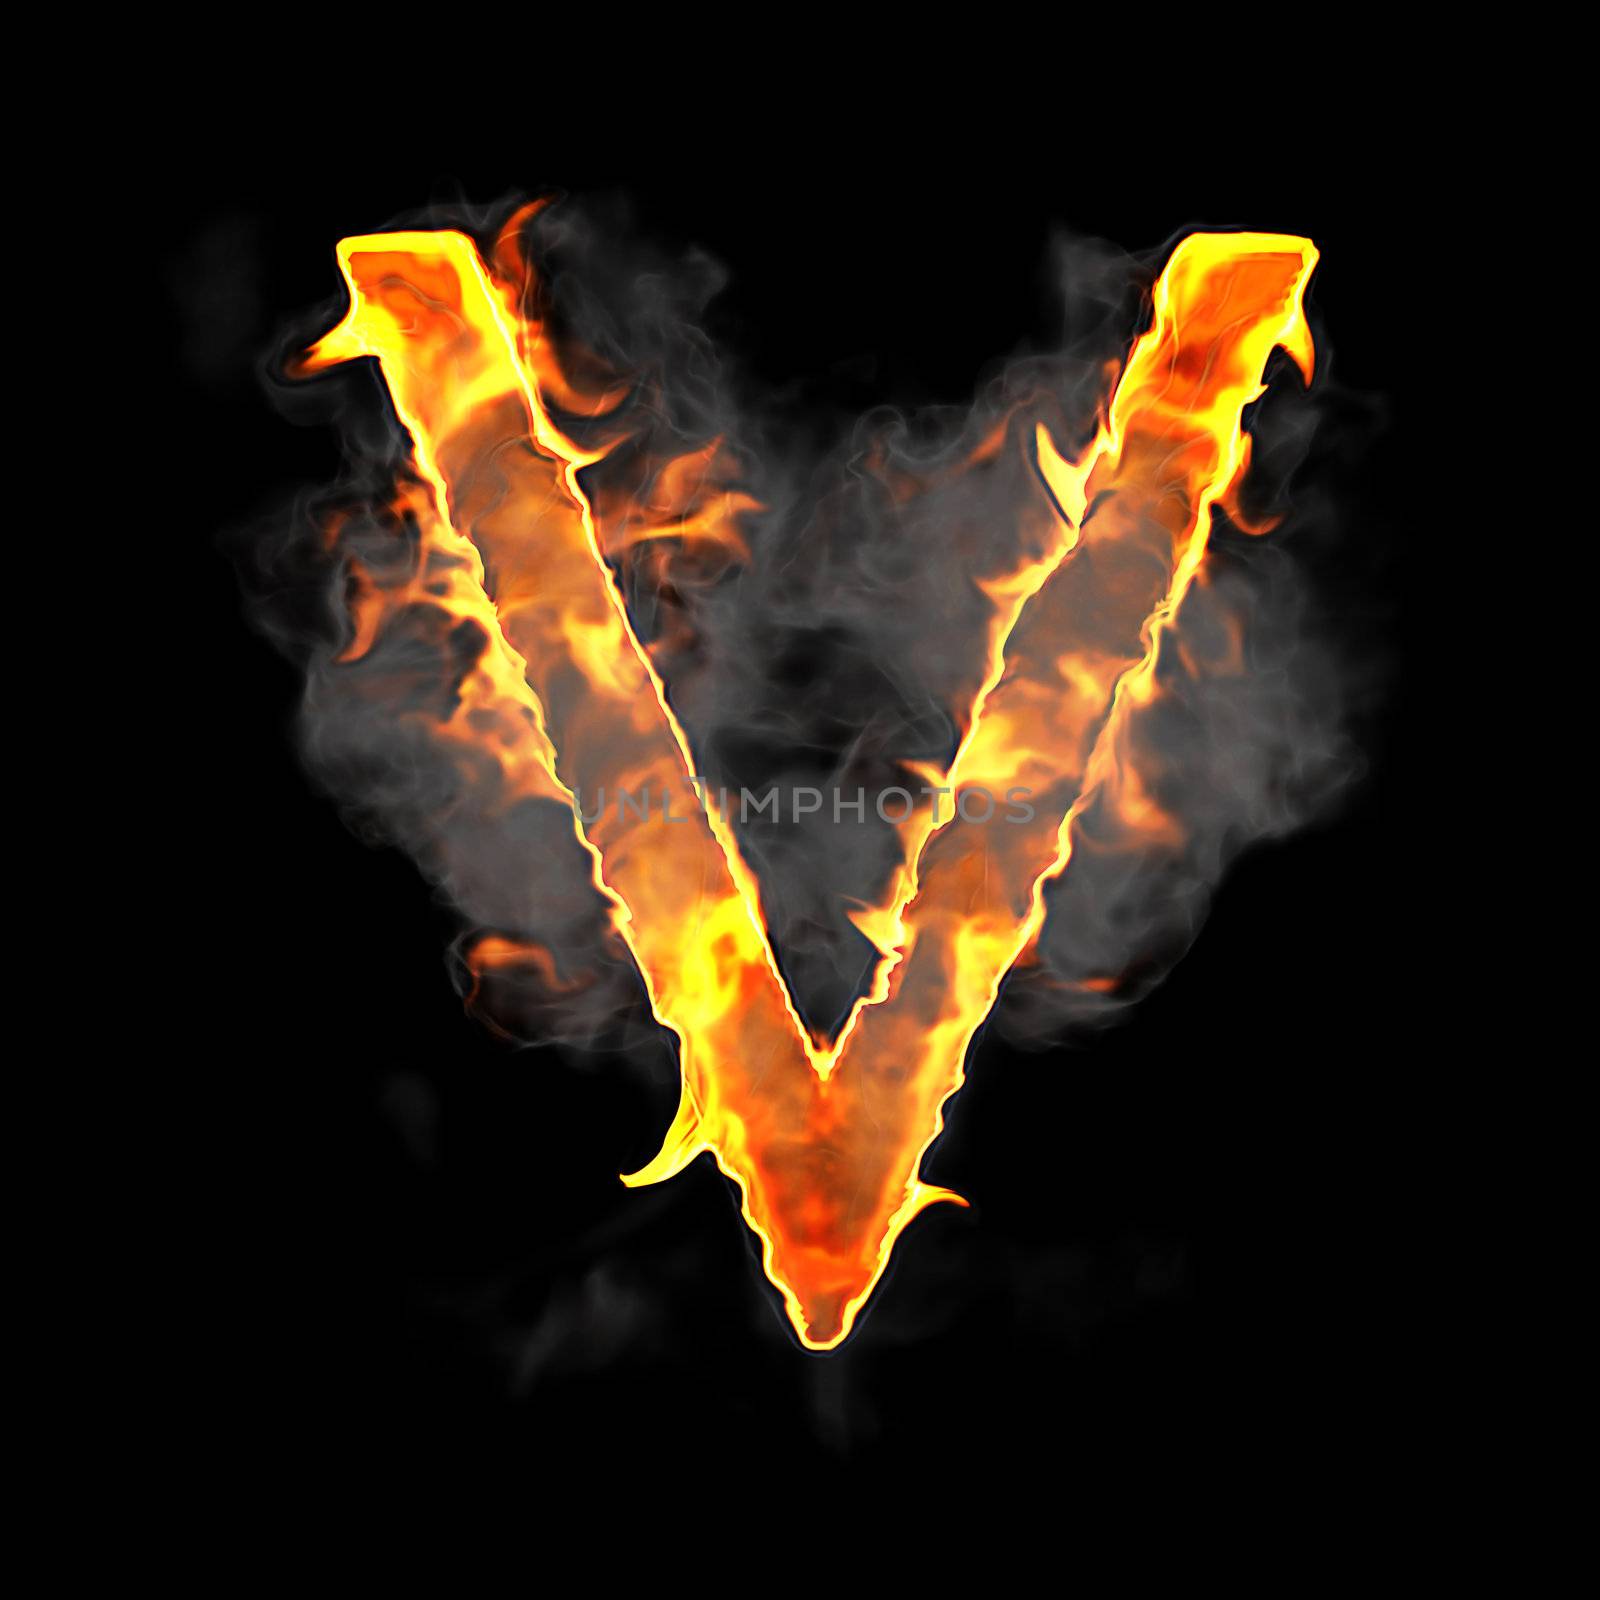 Burning and flame font V letter over black background